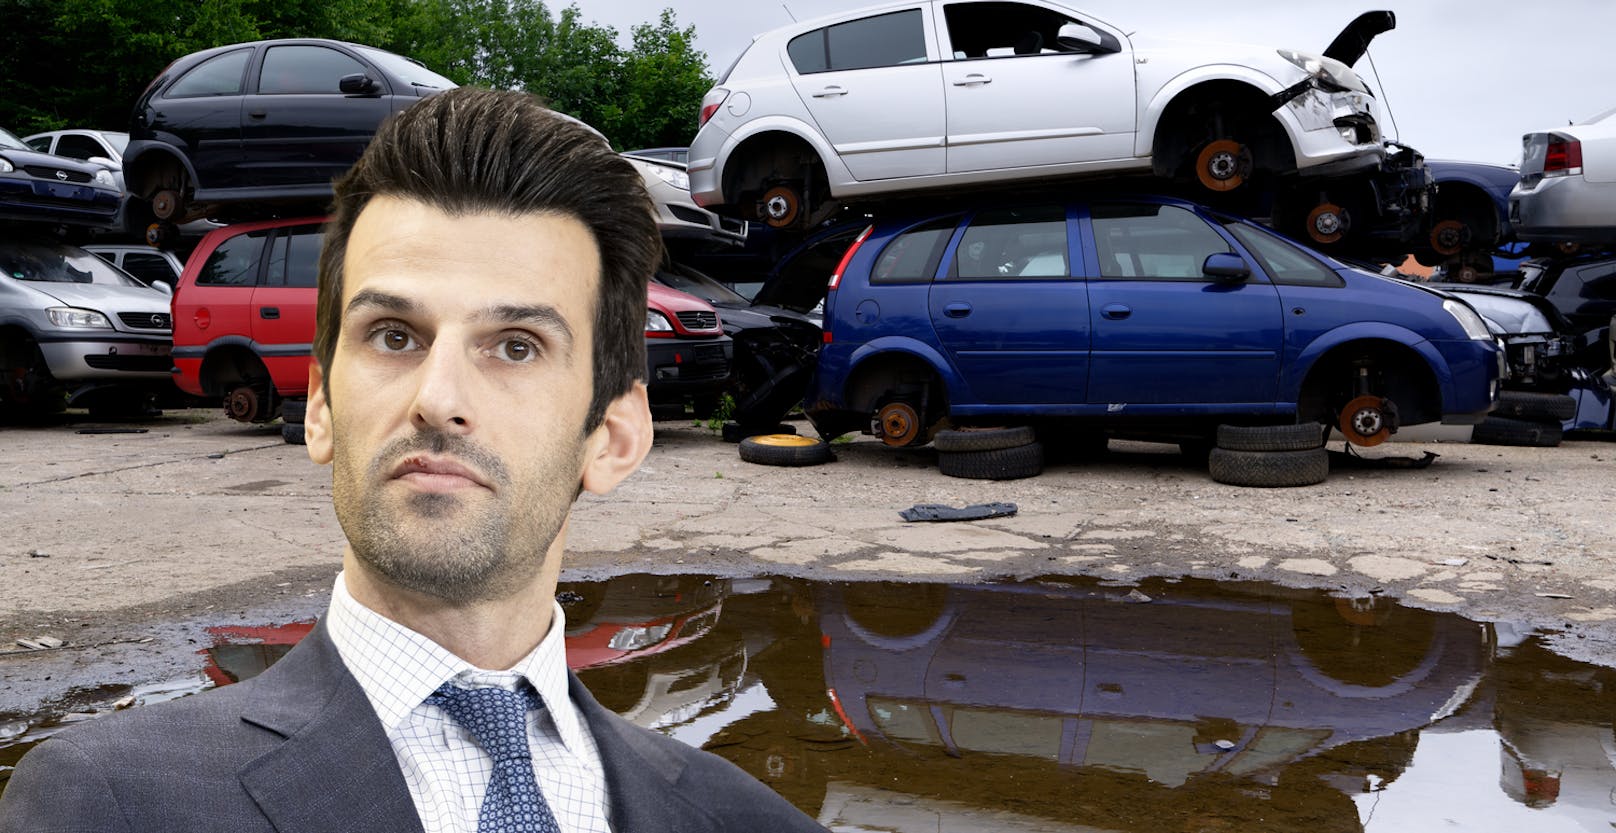 "EU schrottet unsere Autos" – FP-Landbauer sieht Gefahr